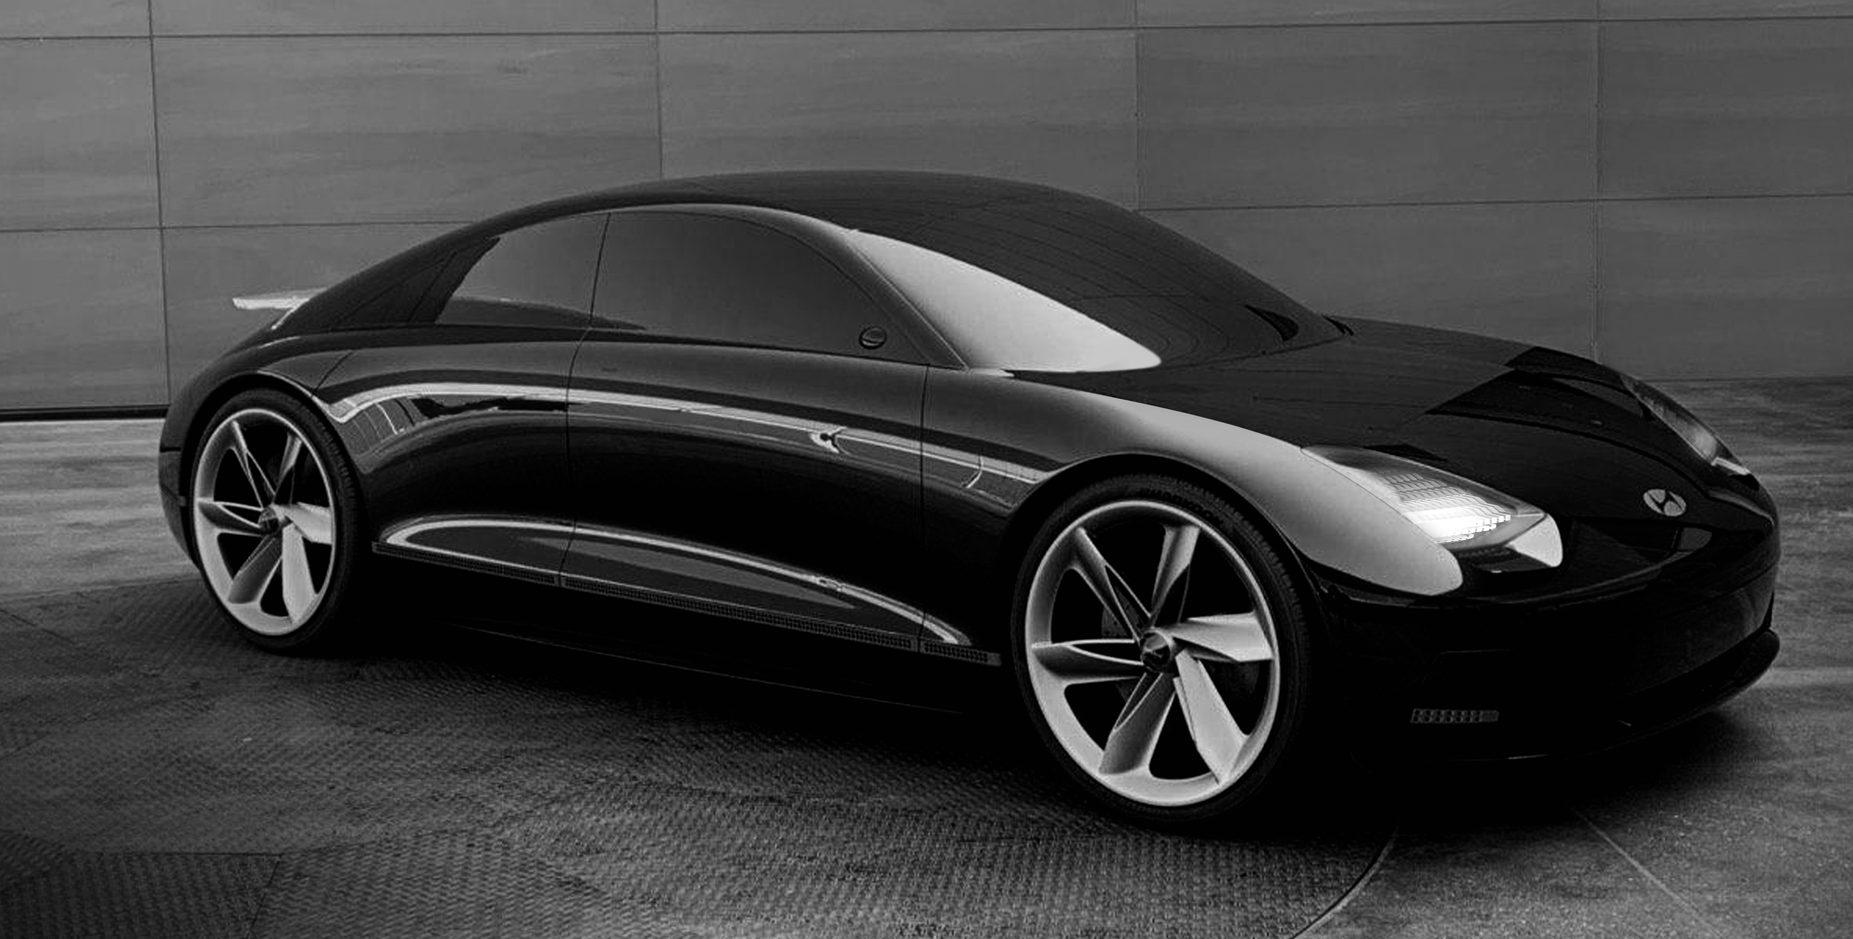 The Hyundai Prophecy EV Concept